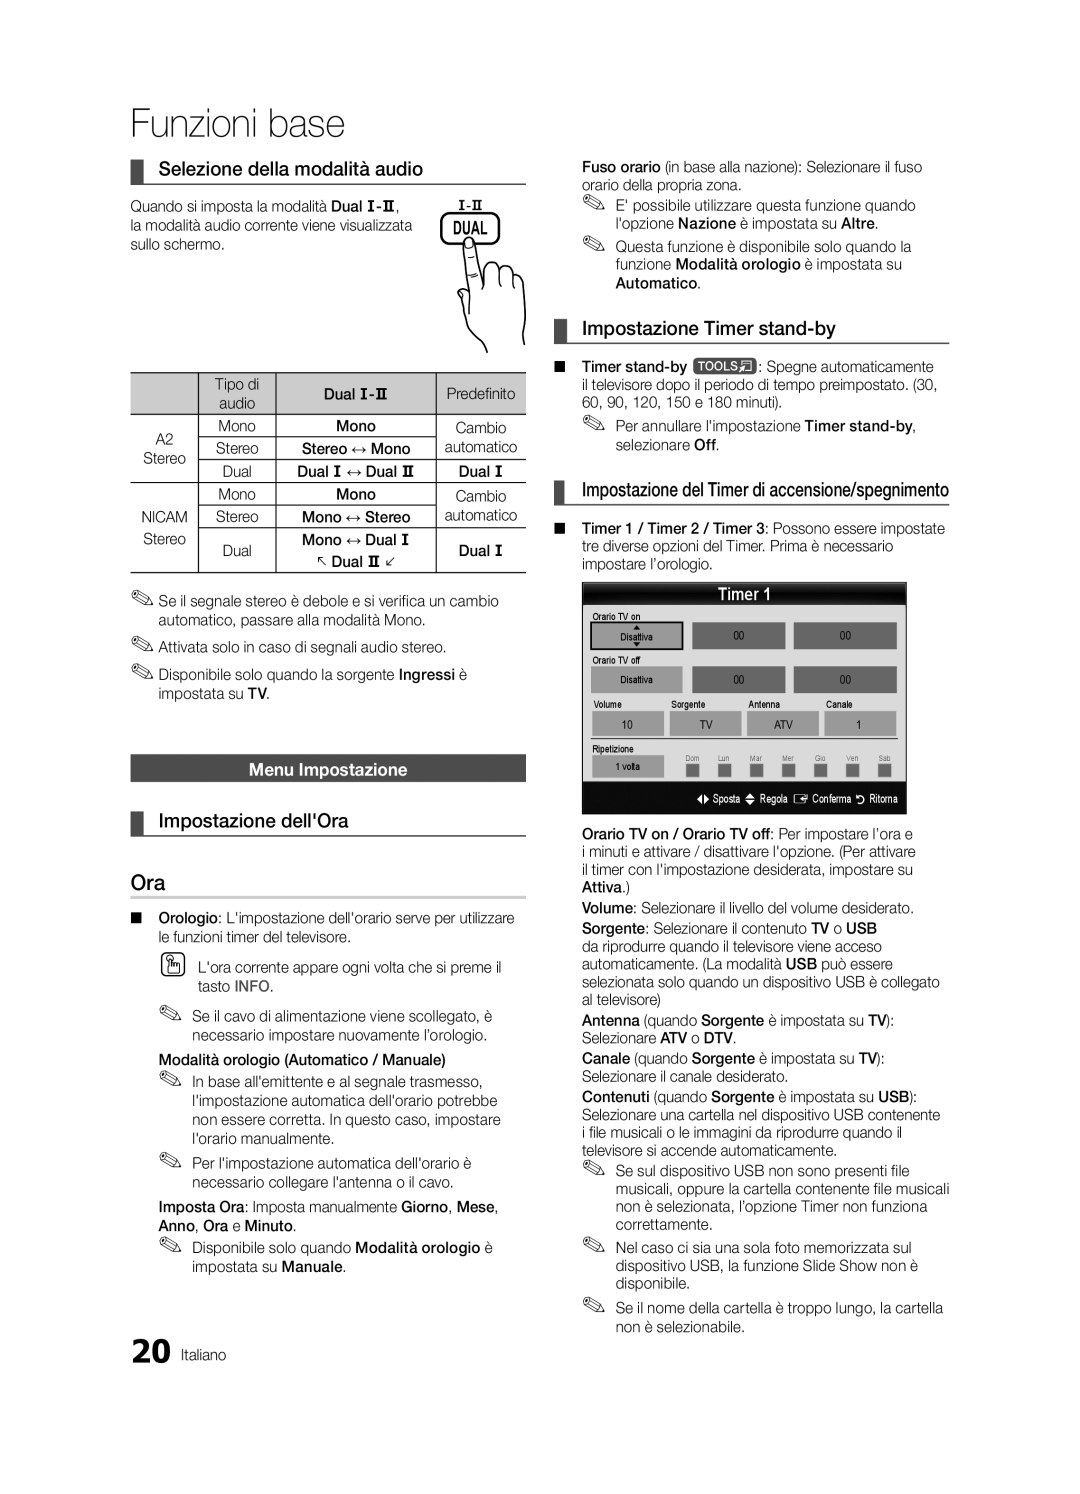 Samsung UE37C6500UPXZT manual Selezione della modalità audio, Impostazione dellOra, Impostazione Timer stand-by 